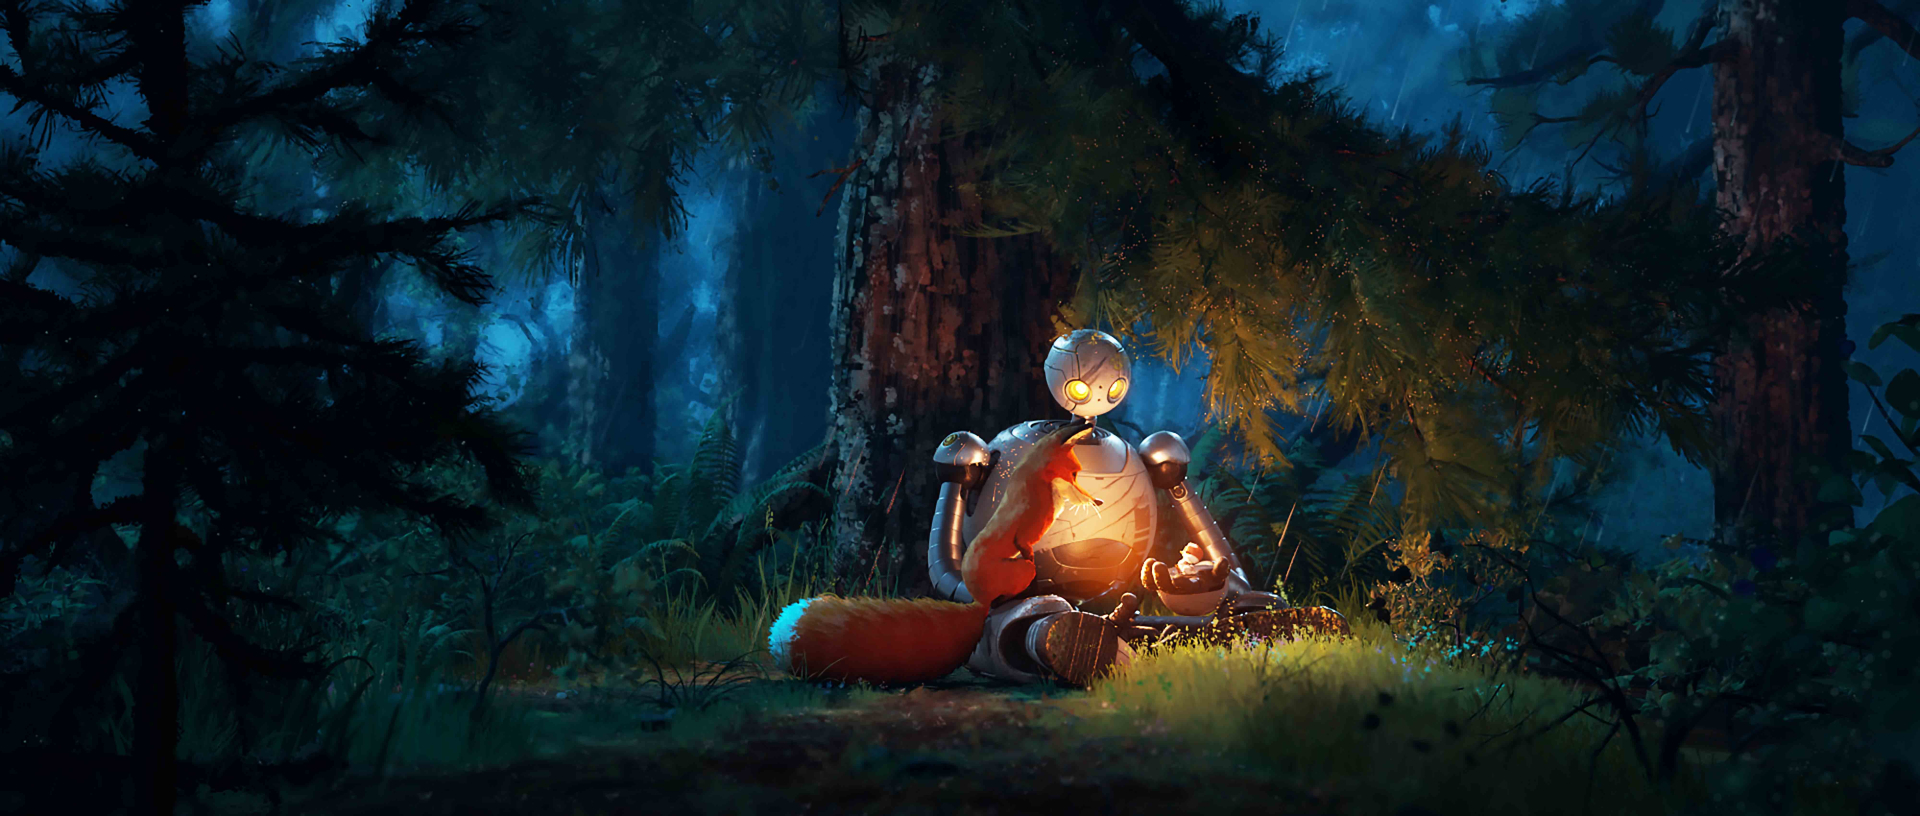 The Wild Robot - Bom tấn hoạt hình tháng 10 nhà DreamWorks nhá hàng trailer mới đầy cảm xúc - ảnh 2